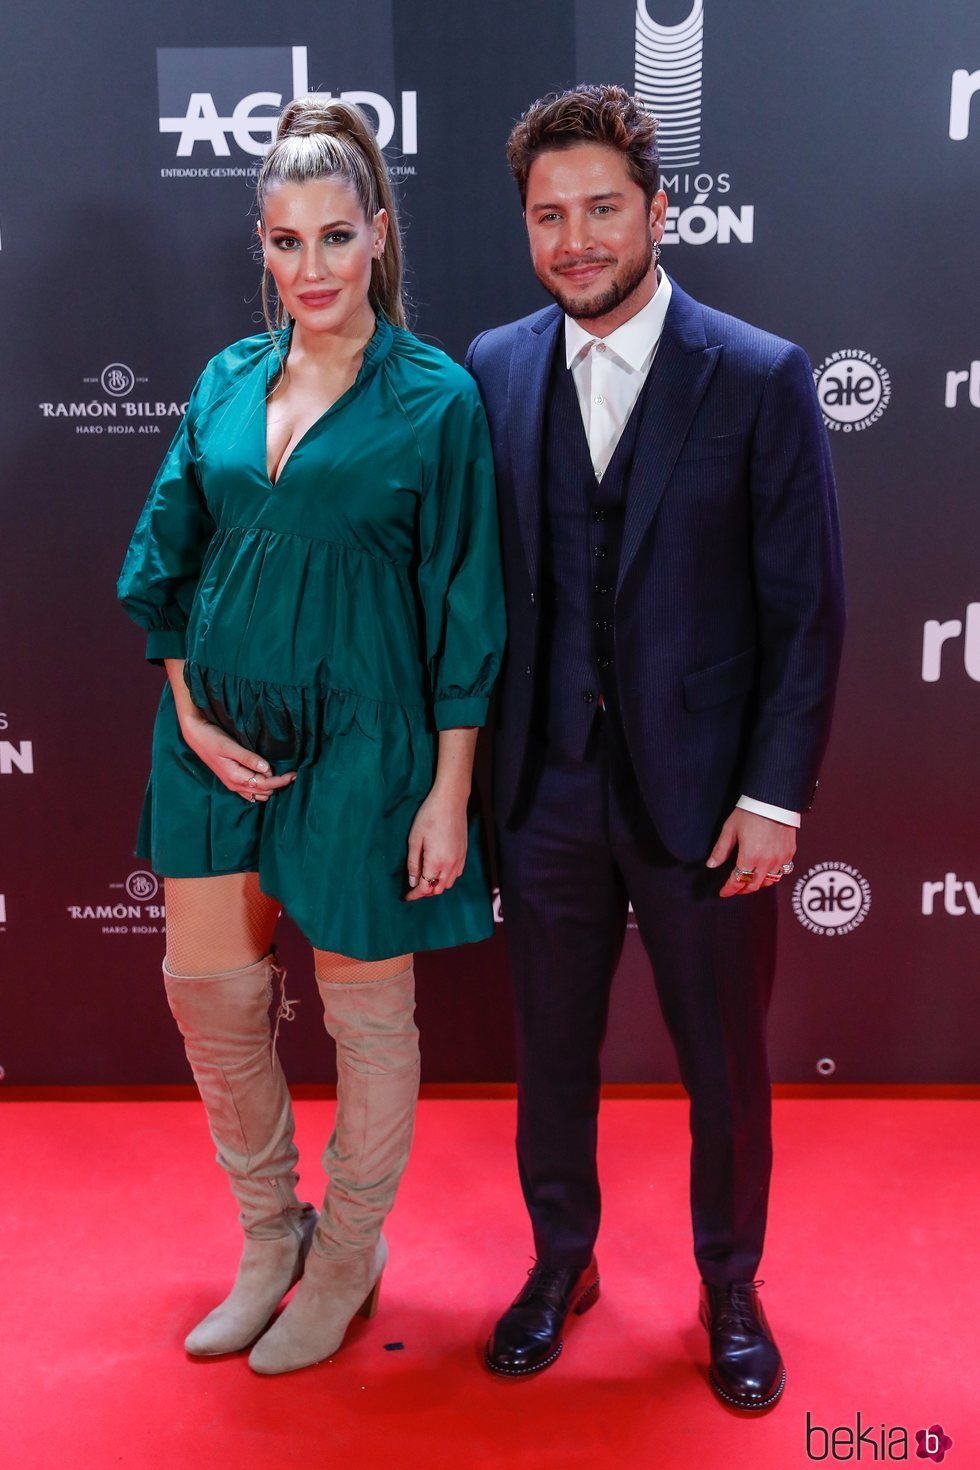 Almudena Navalón y Manuel Carrasco en los Premios Odeón 2020